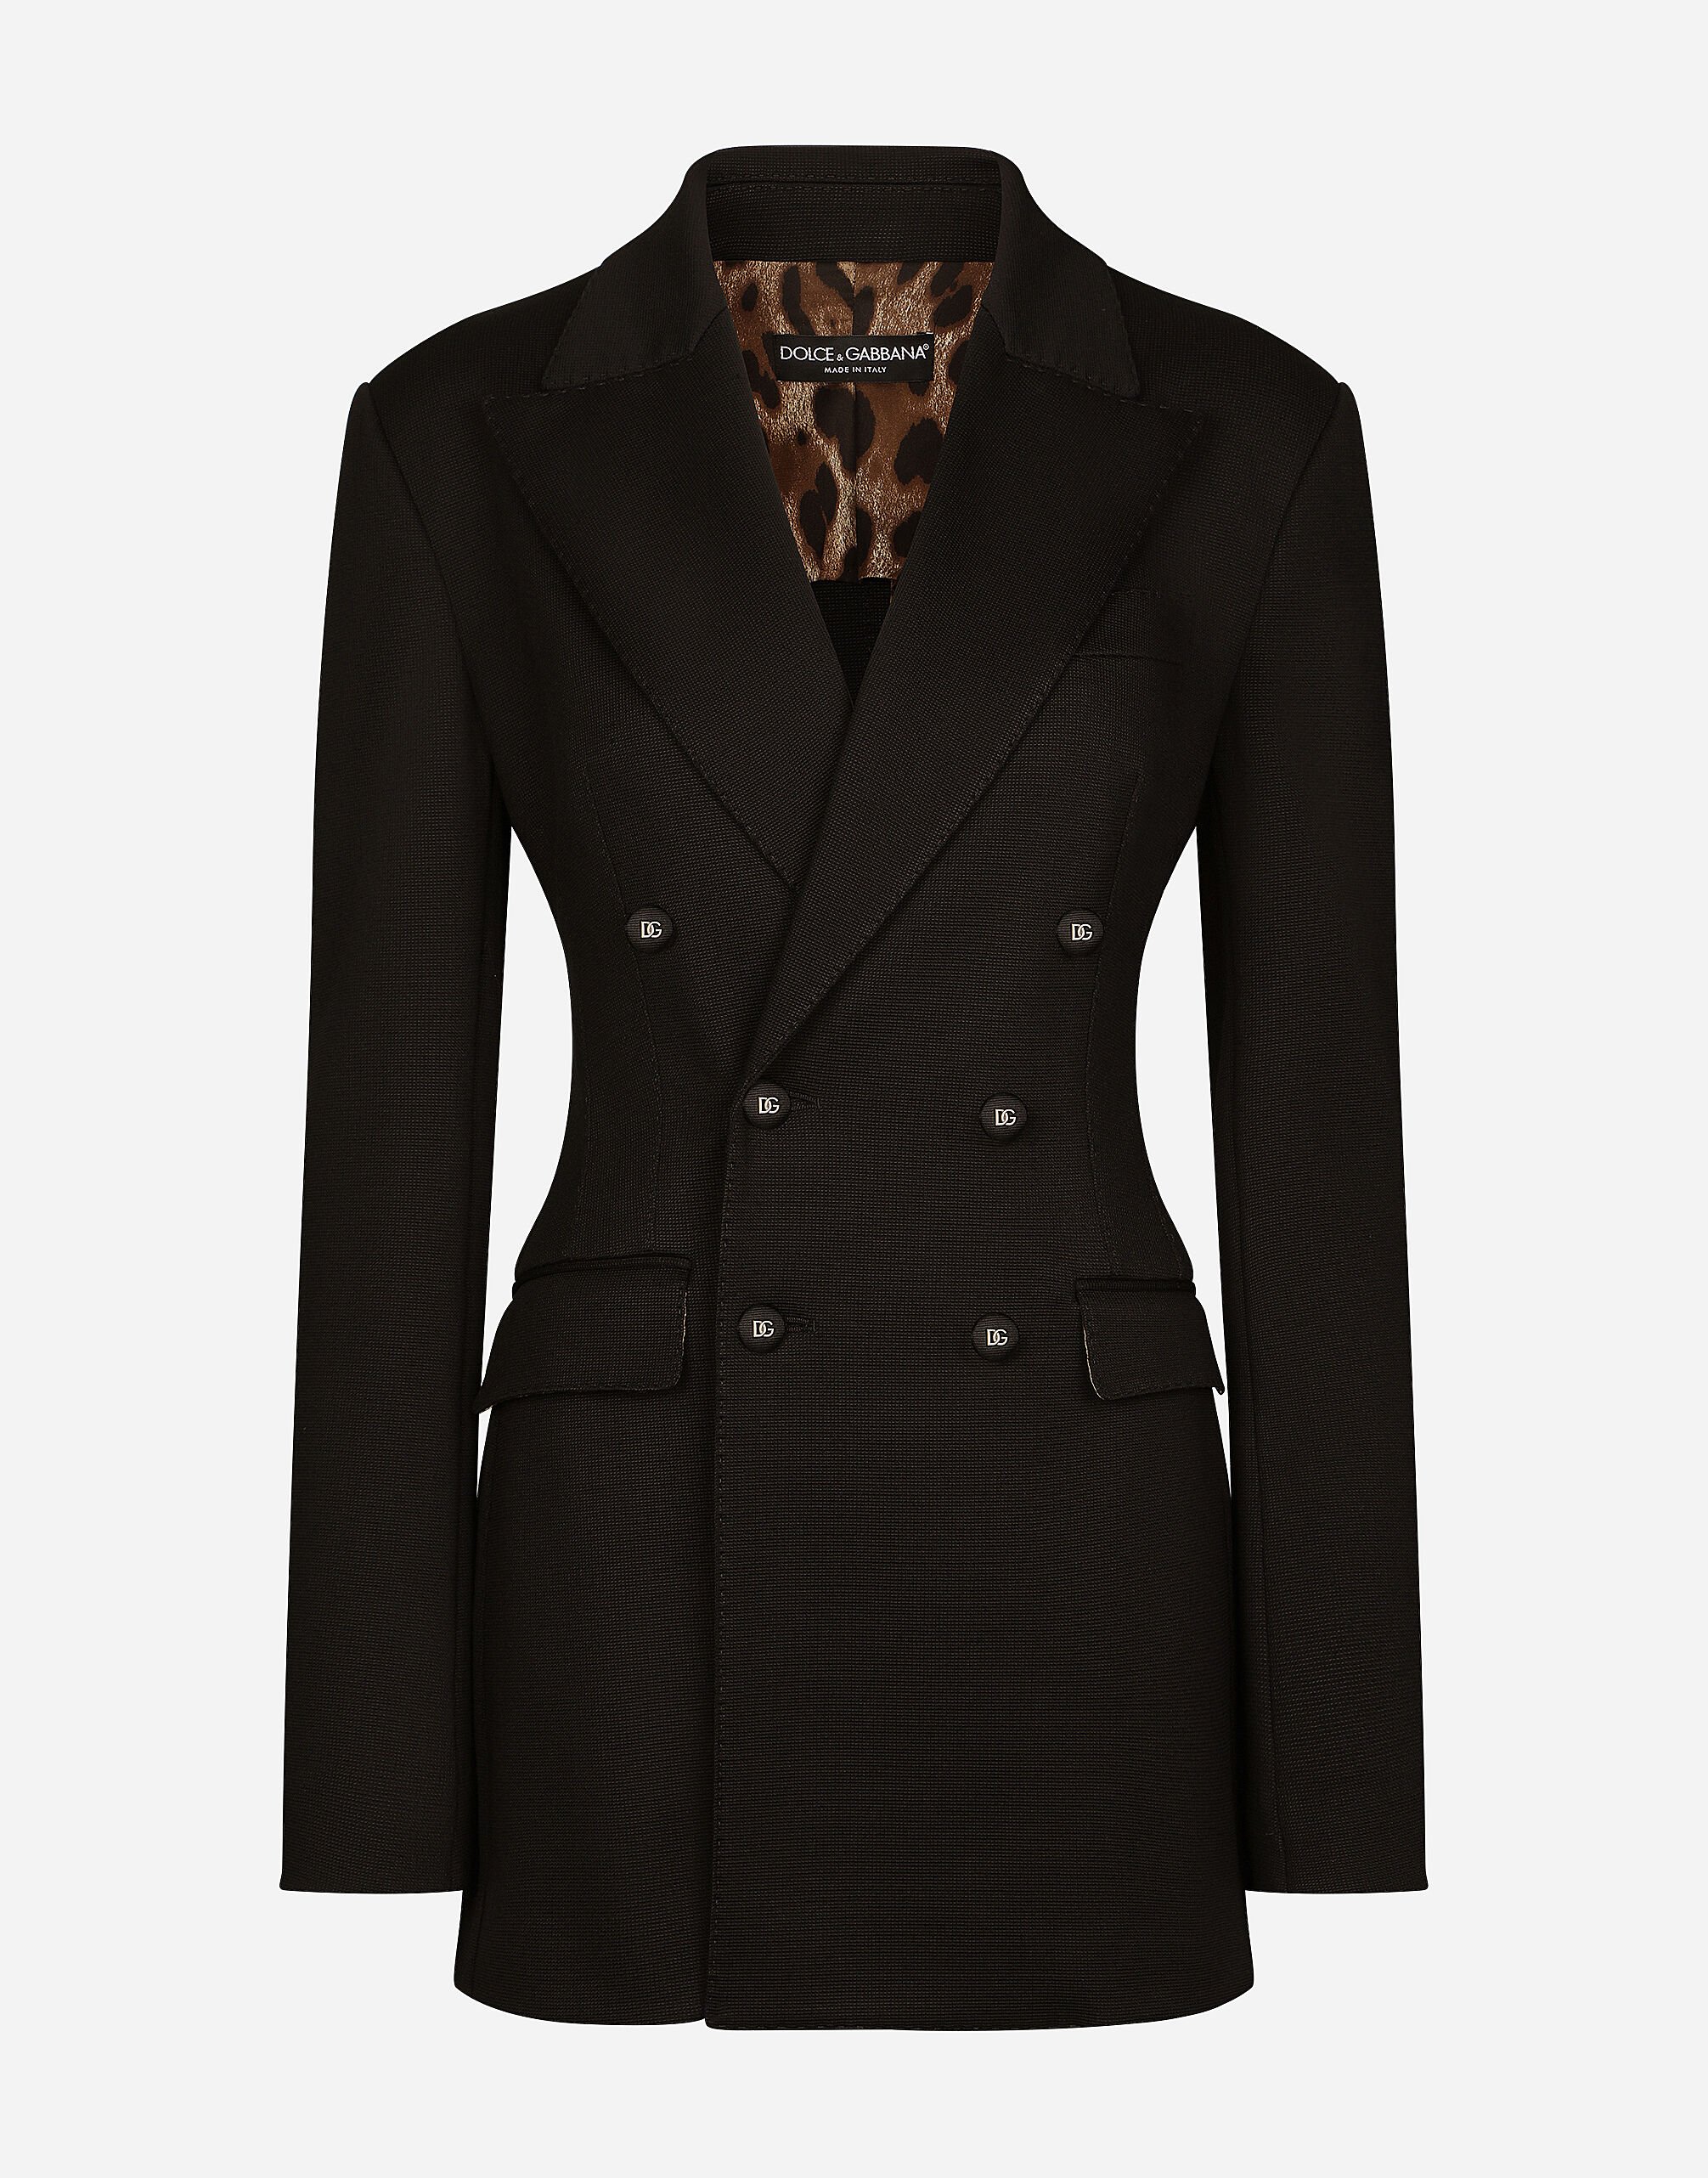 Dolce & Gabbana 米兰针织双排扣夹克 黑 BB6003A1001